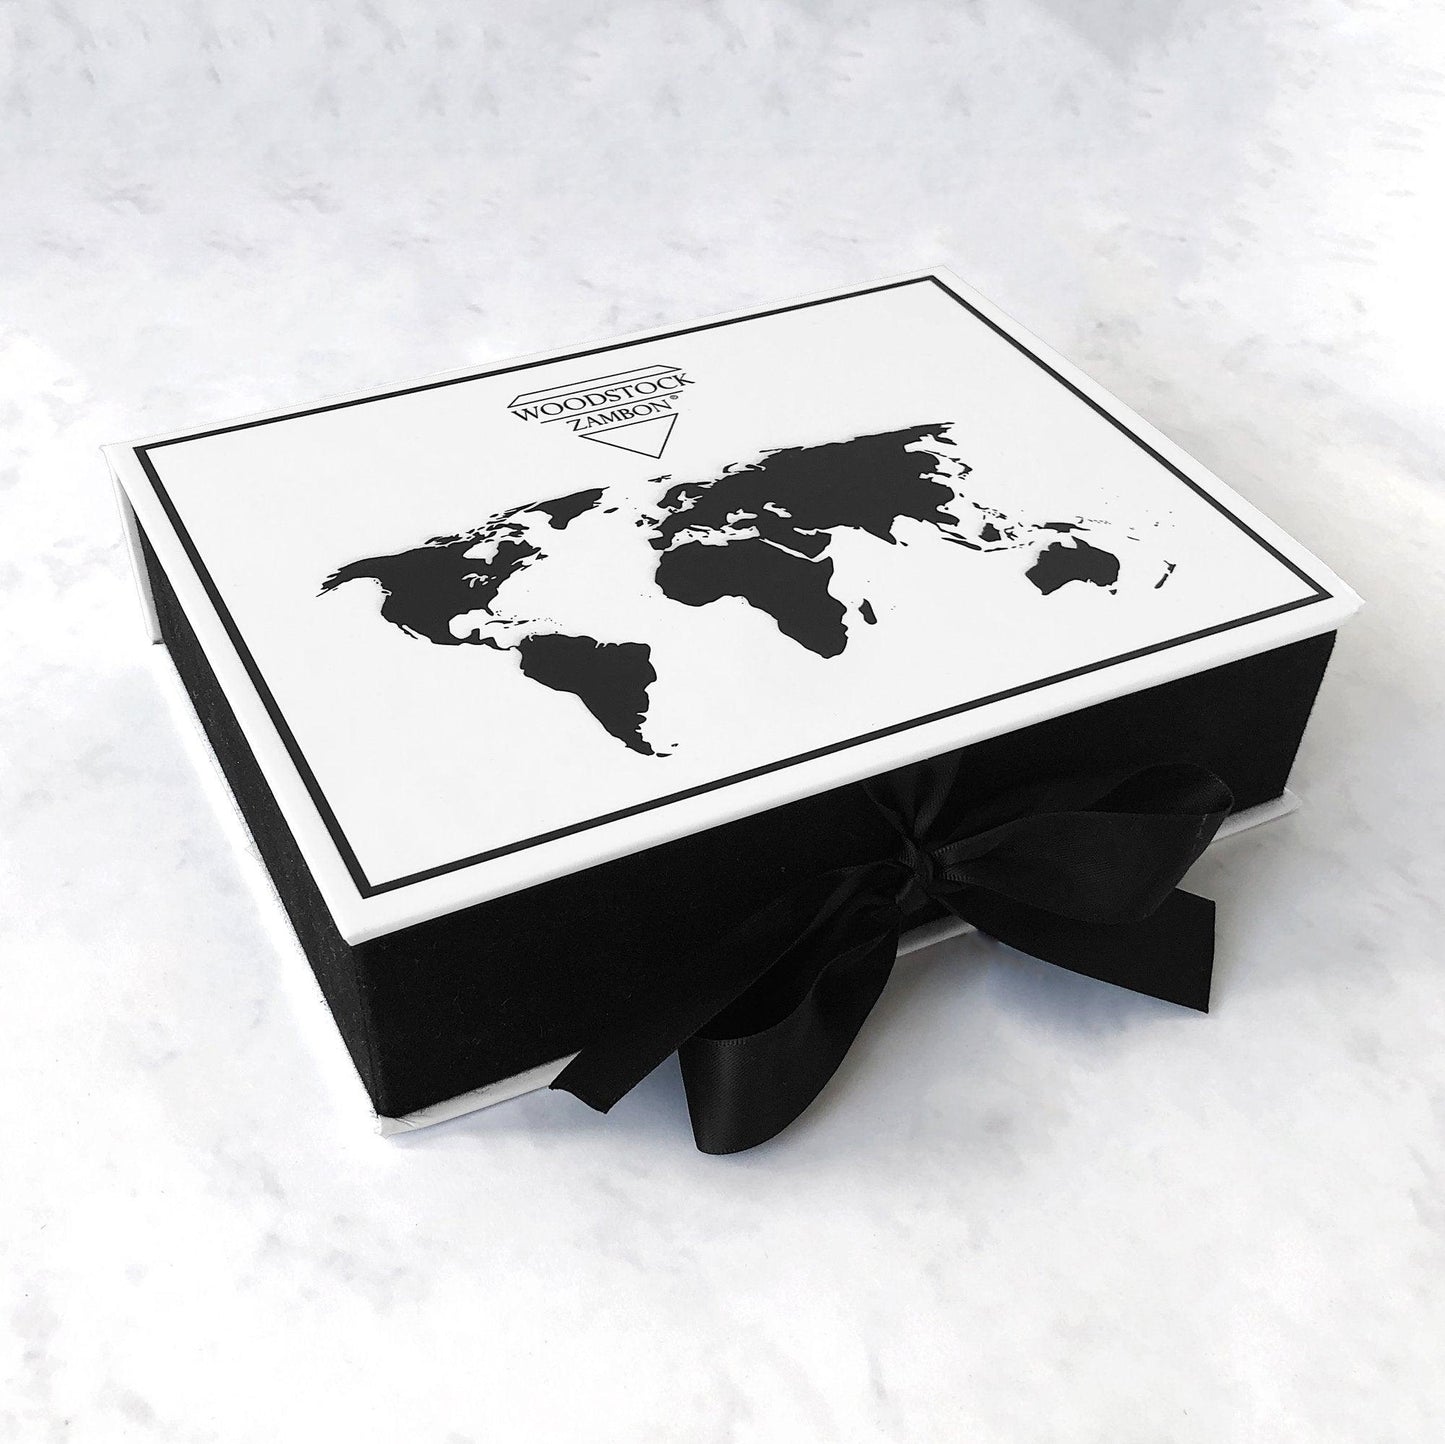 Load image into Gallery viewer, Sunrise Gift Box - WOODSTOCK ZAMBON
